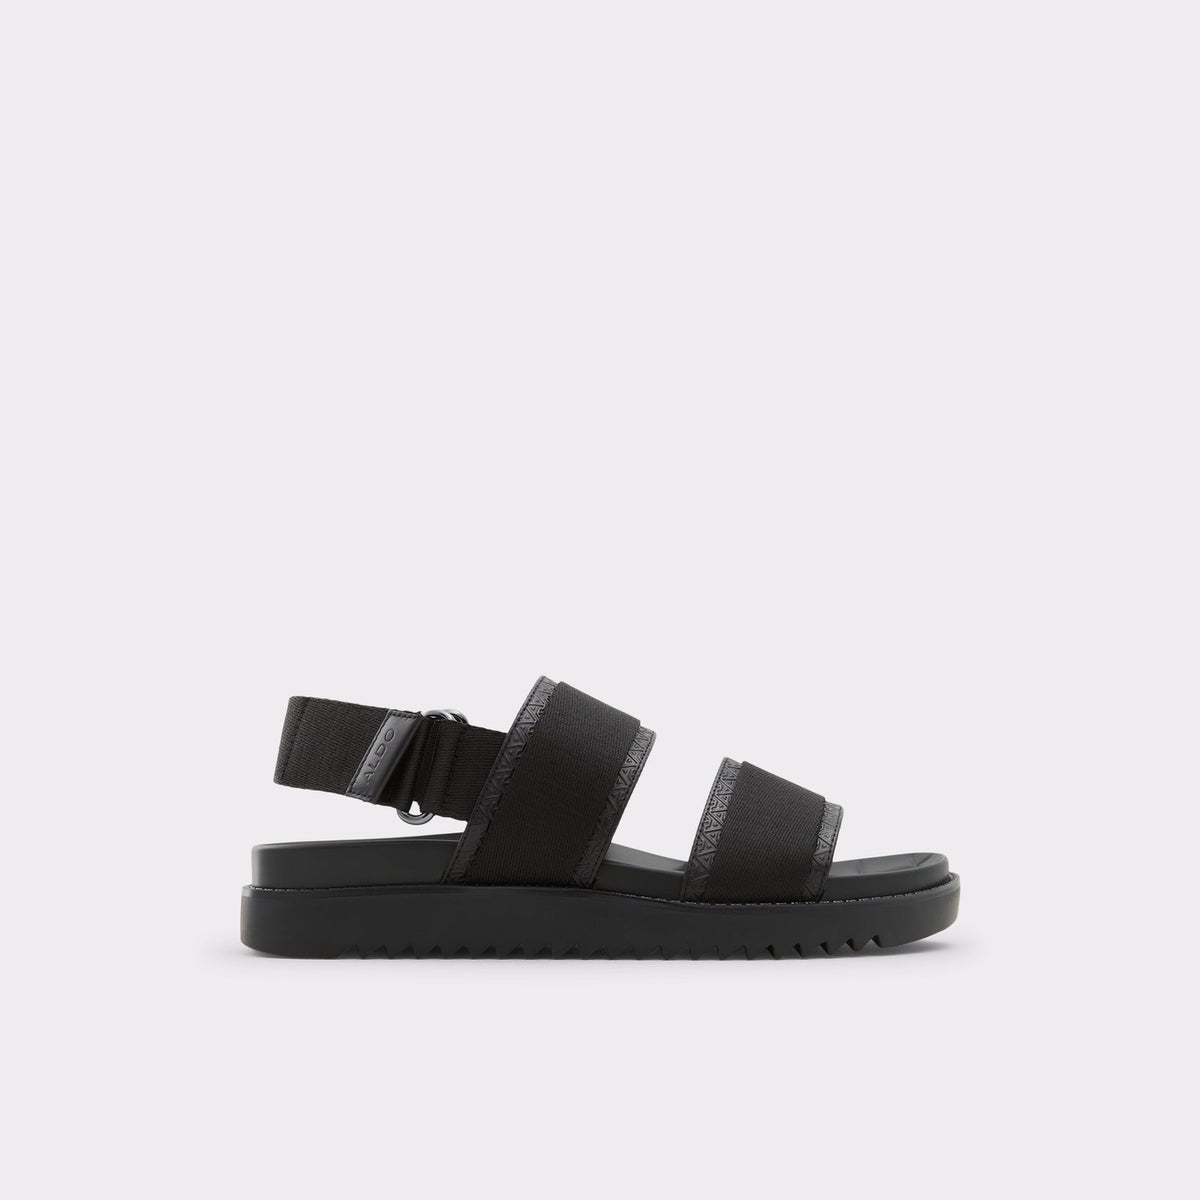 Aldo Men's Flat Sandal Strappa (Black) – ALDO UK